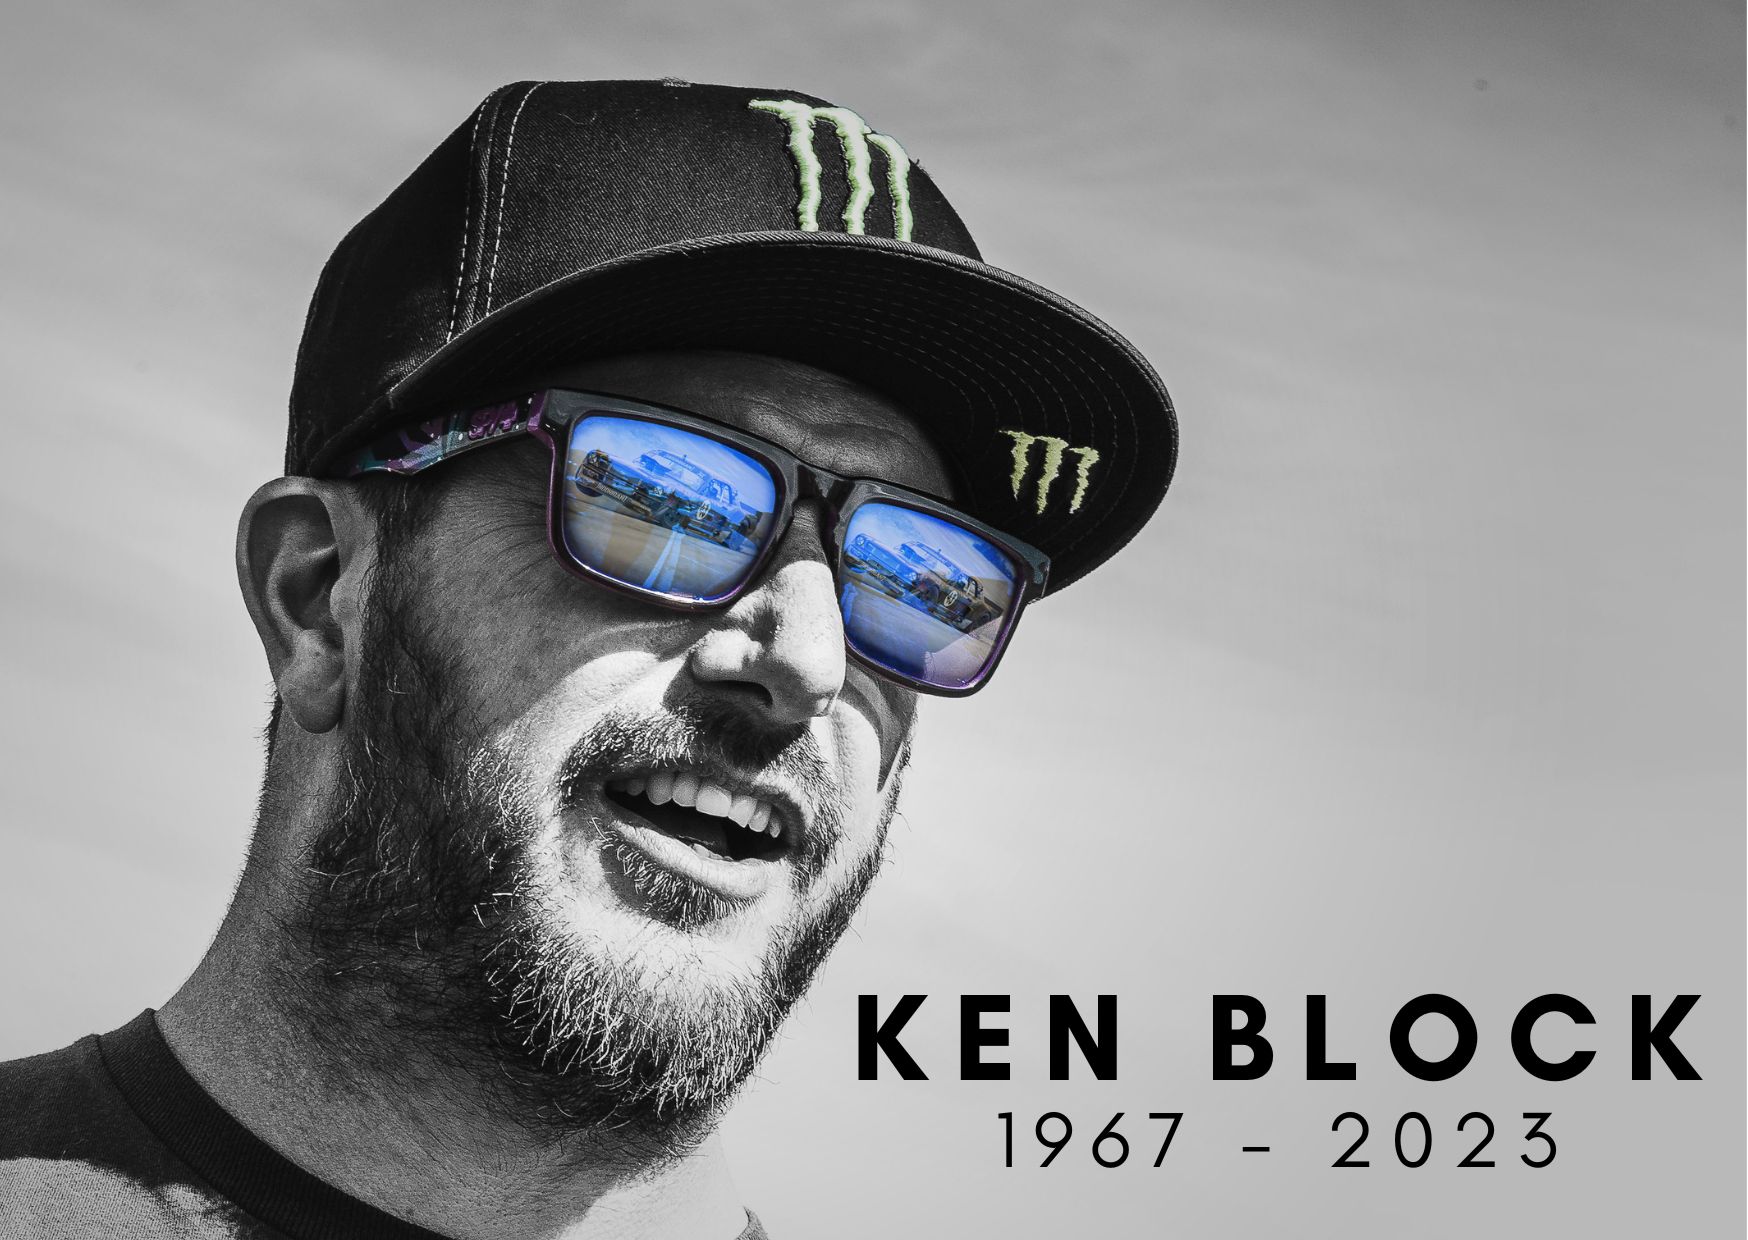 Pembalab dan bintang YouTube Ken Block meninggal dalam kecelakaan mobil salju